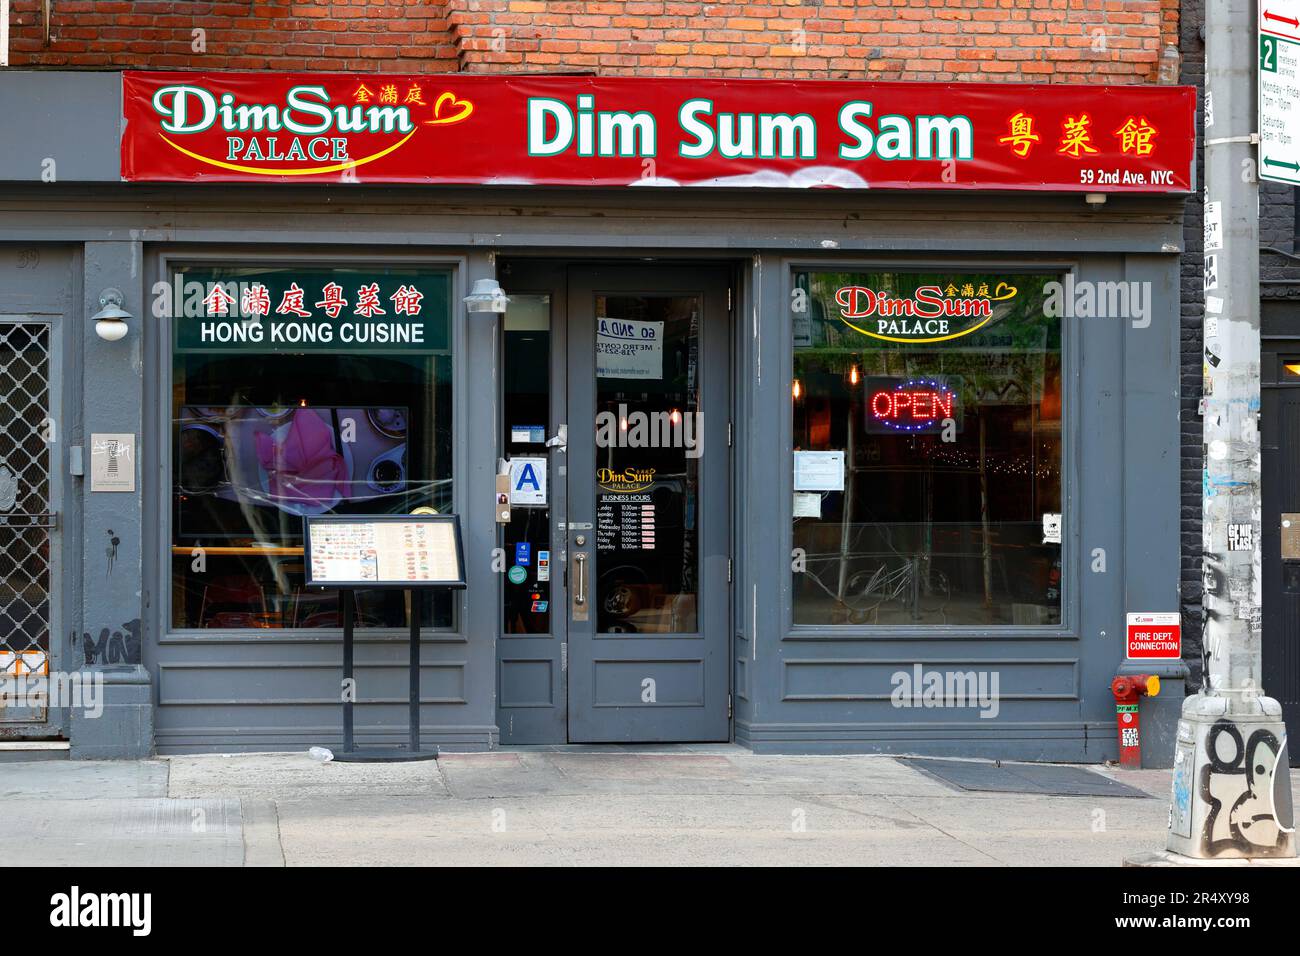 Dim Sum Sam 金滿庭, 59 2nd Ave, New York, NYC foto di un ristorante cinese cantonese veloce e informale nell'East Village di Manhattan Foto Stock